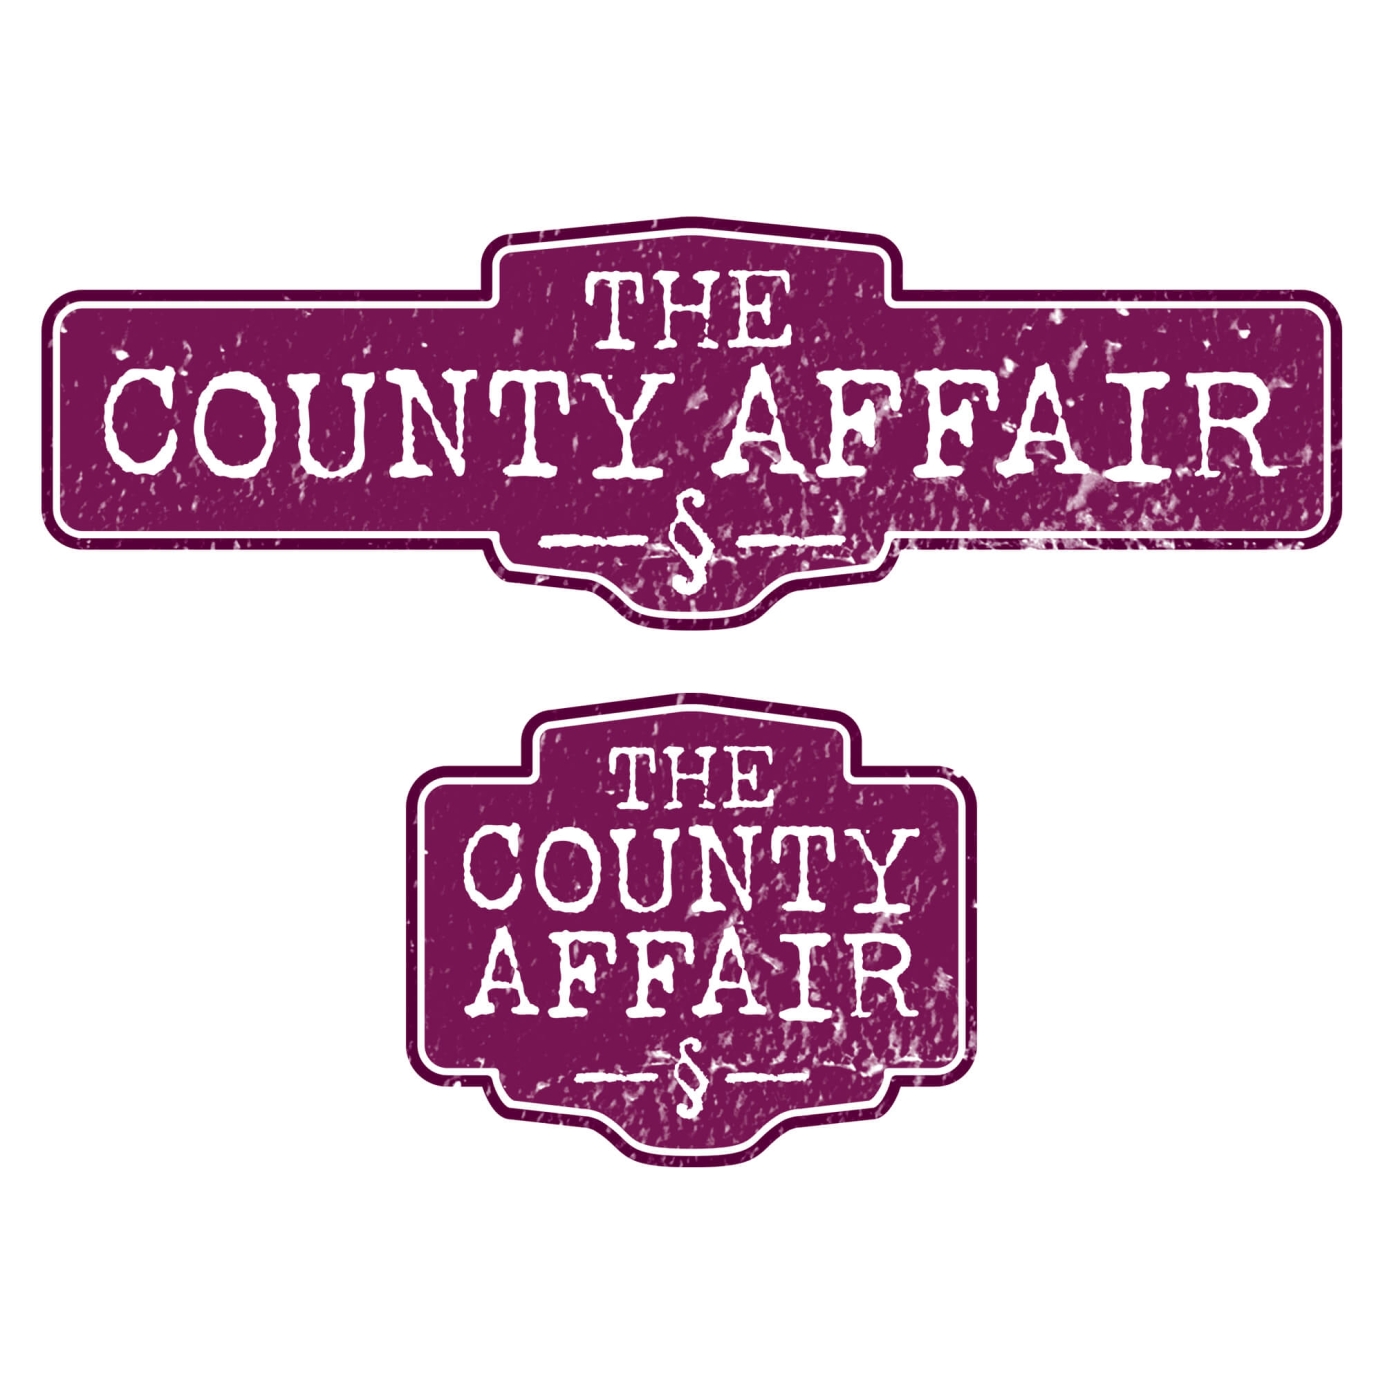 The County Affair